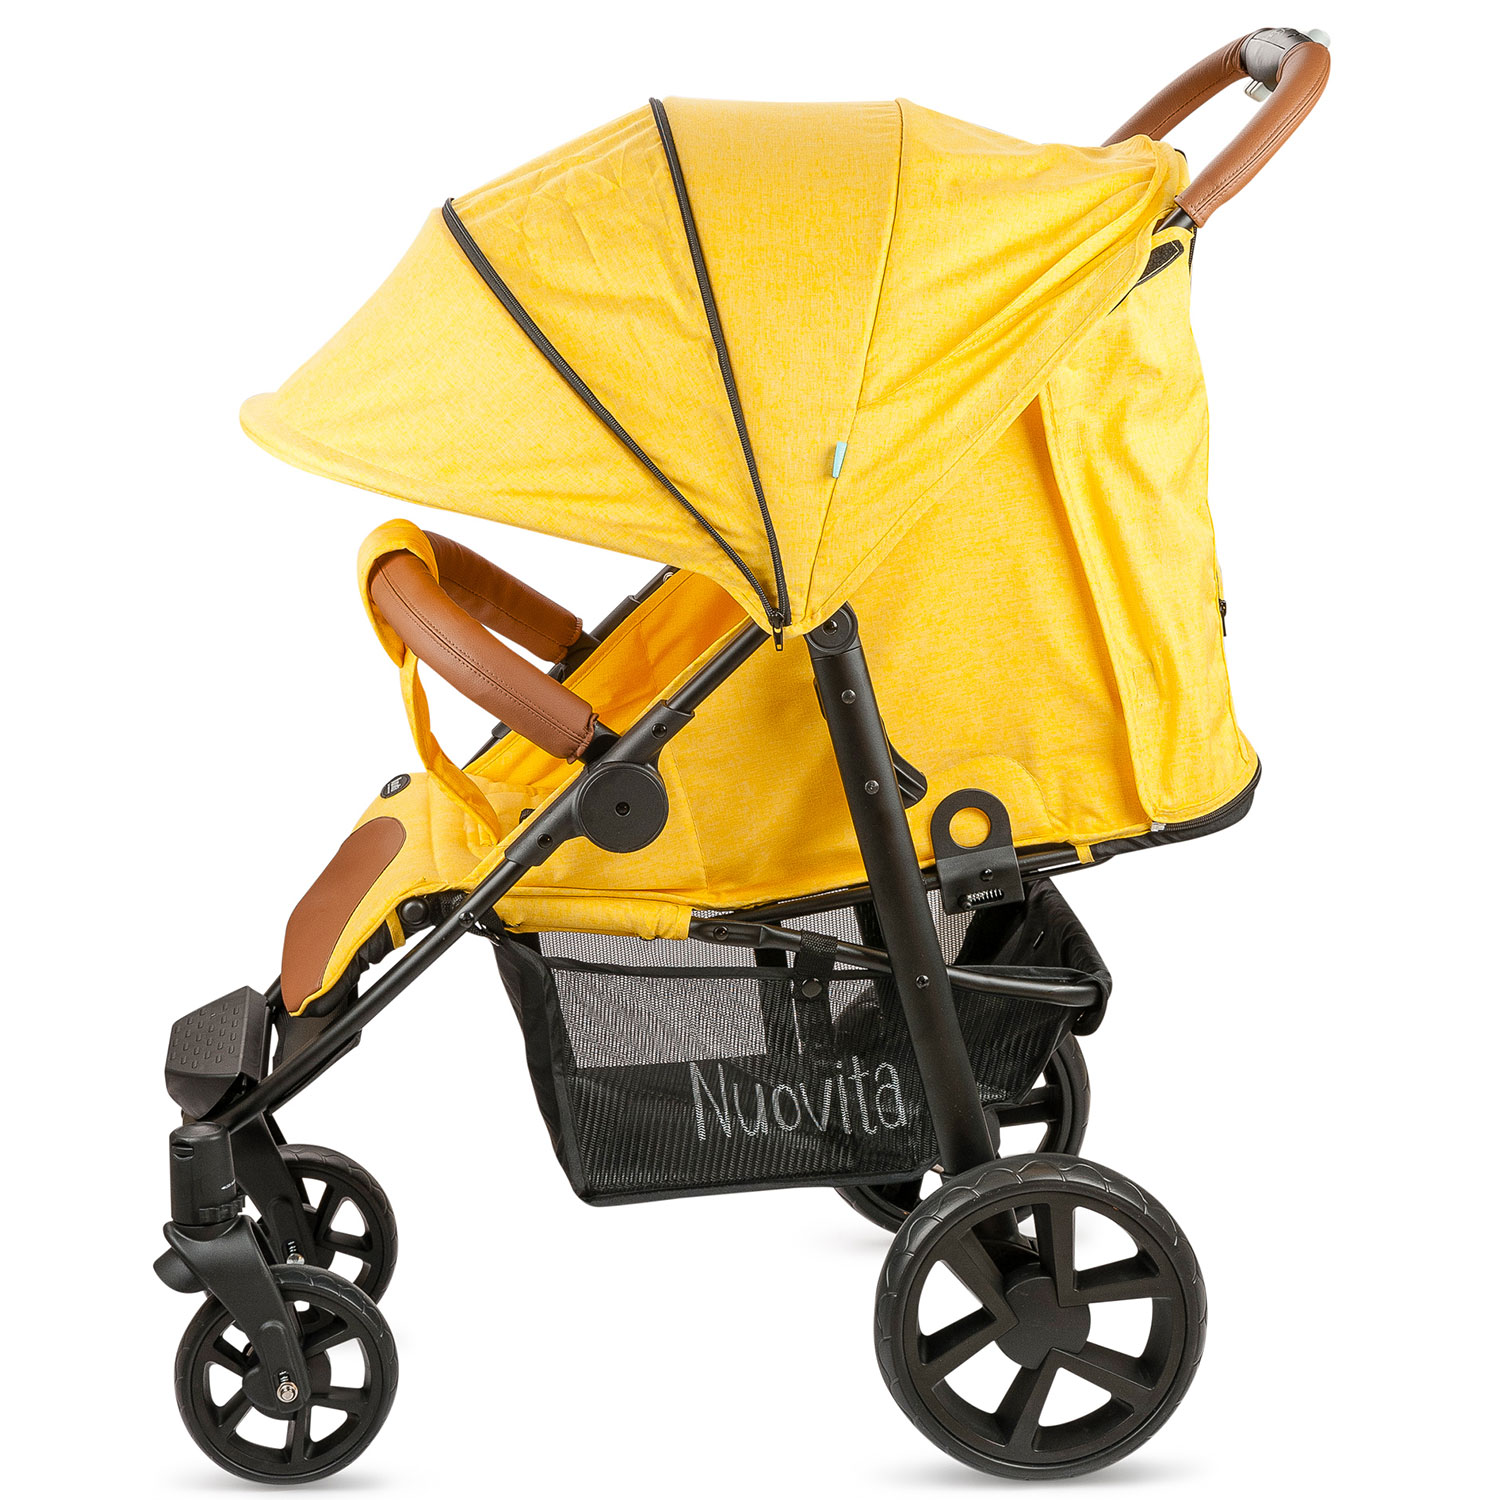 Прогулочная коляска Nuovita Corso, цвет Giallo, Nero / Желтый, Черный  